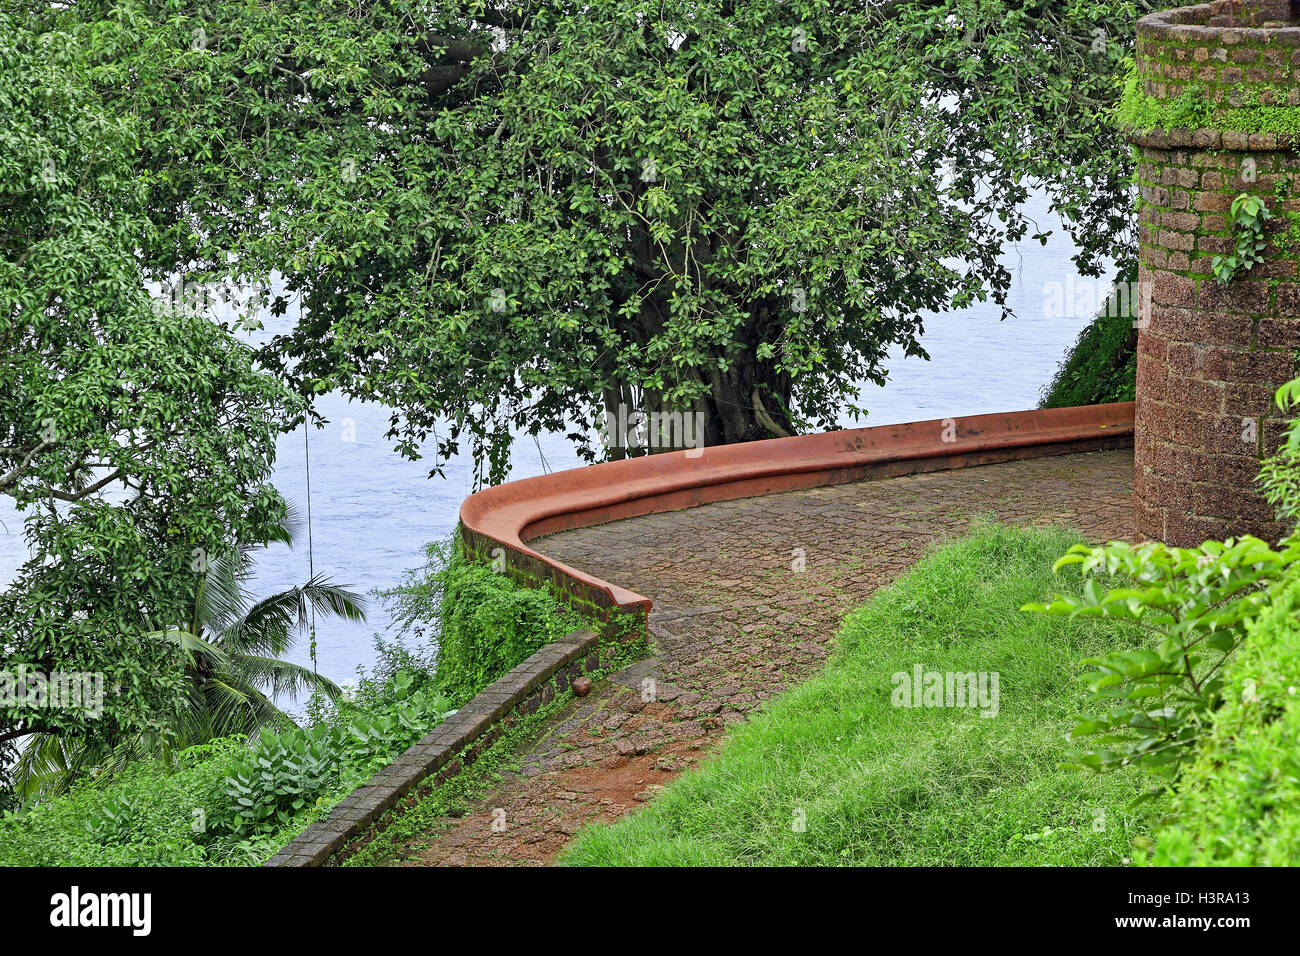 Stone paved entrance path to Portuguese era Reis Magos Fort in Goa, India Stock Photo